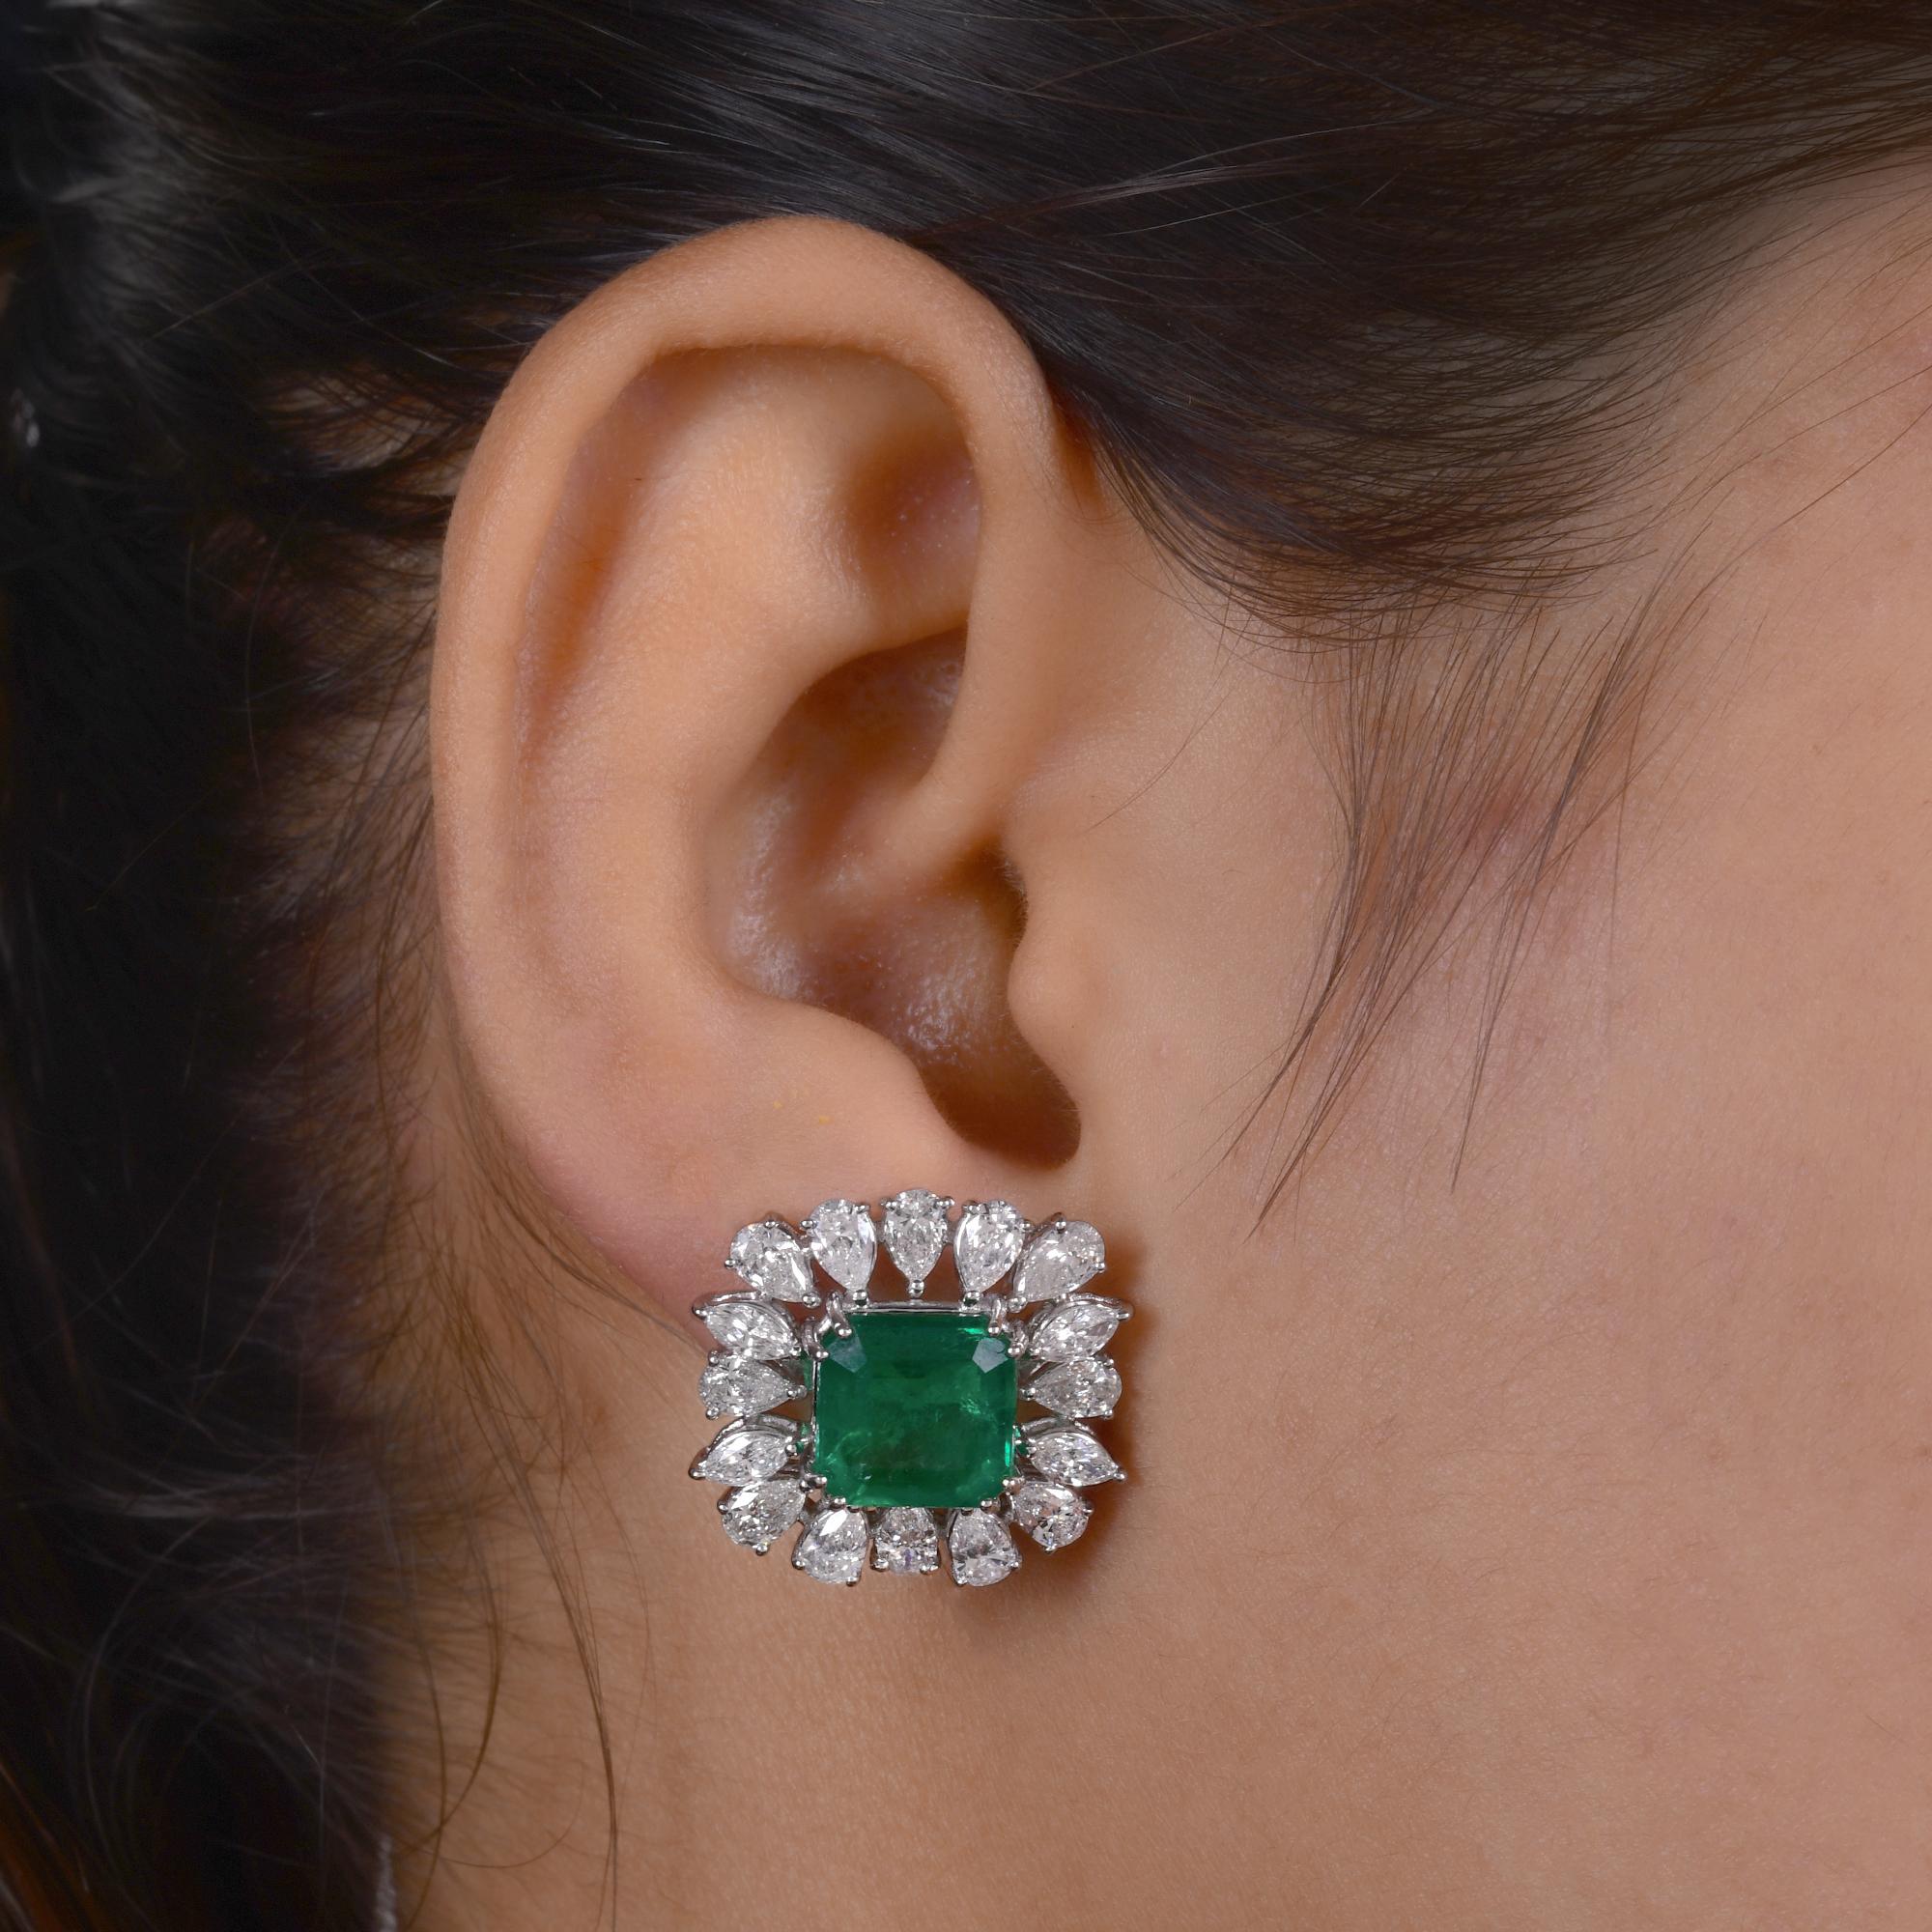 Modern Zambian Emerald Gemstone Stud Earrings Pear Diamond 18 Karat White Gold Jewelry For Sale